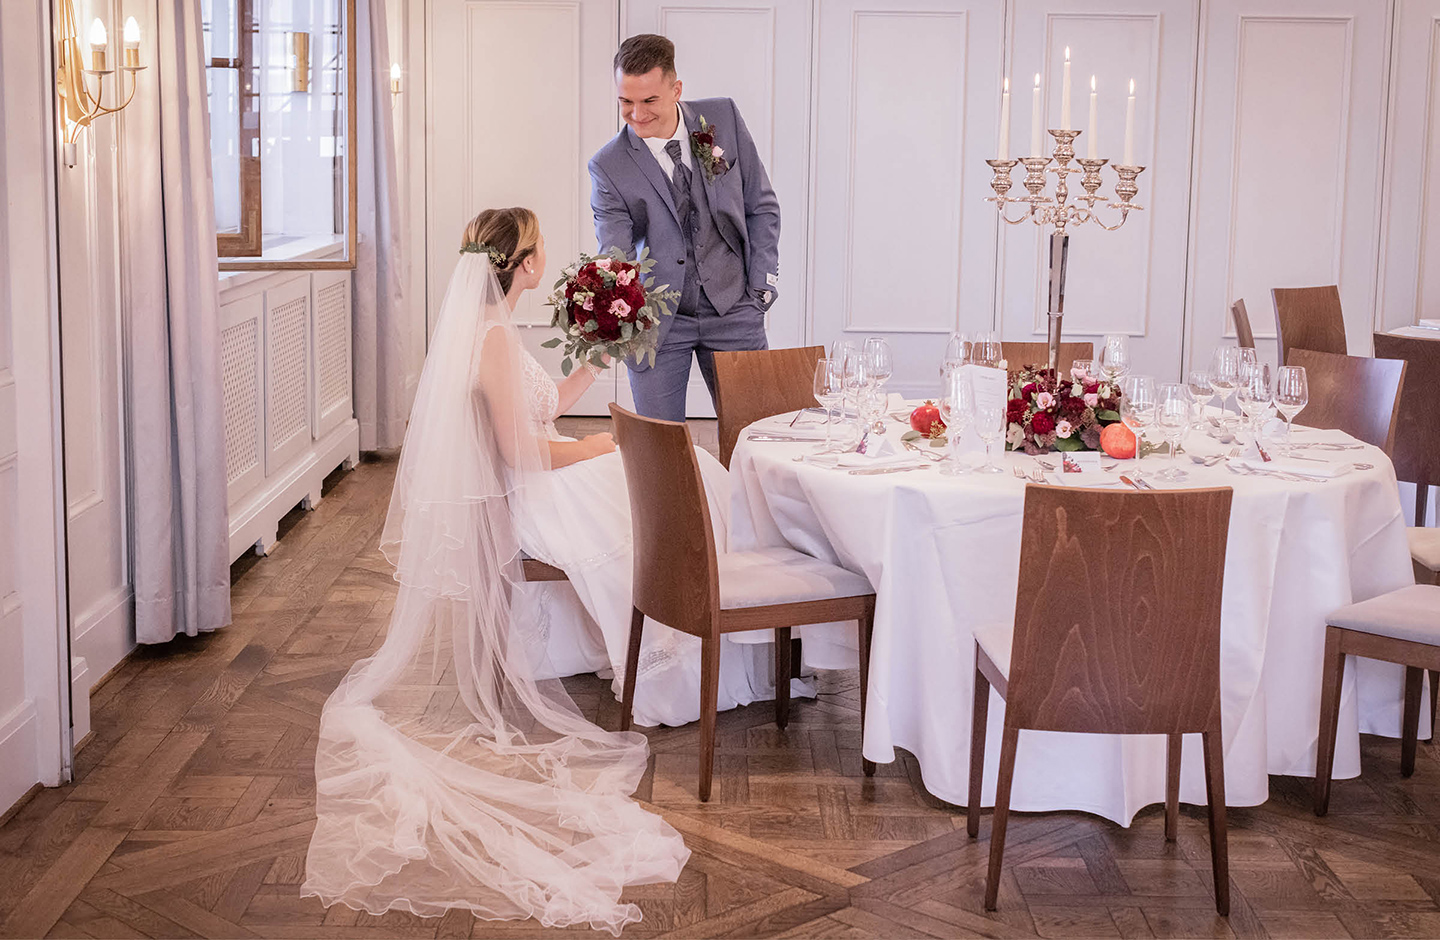 Braut und Bräutigam sehen sich zum ersten Mal in ihren Hochzeitsoutfits. Der Bräutigam trägt einen grau-blauen Anzug, die Braut ein weißes, schlichtes Kleid.